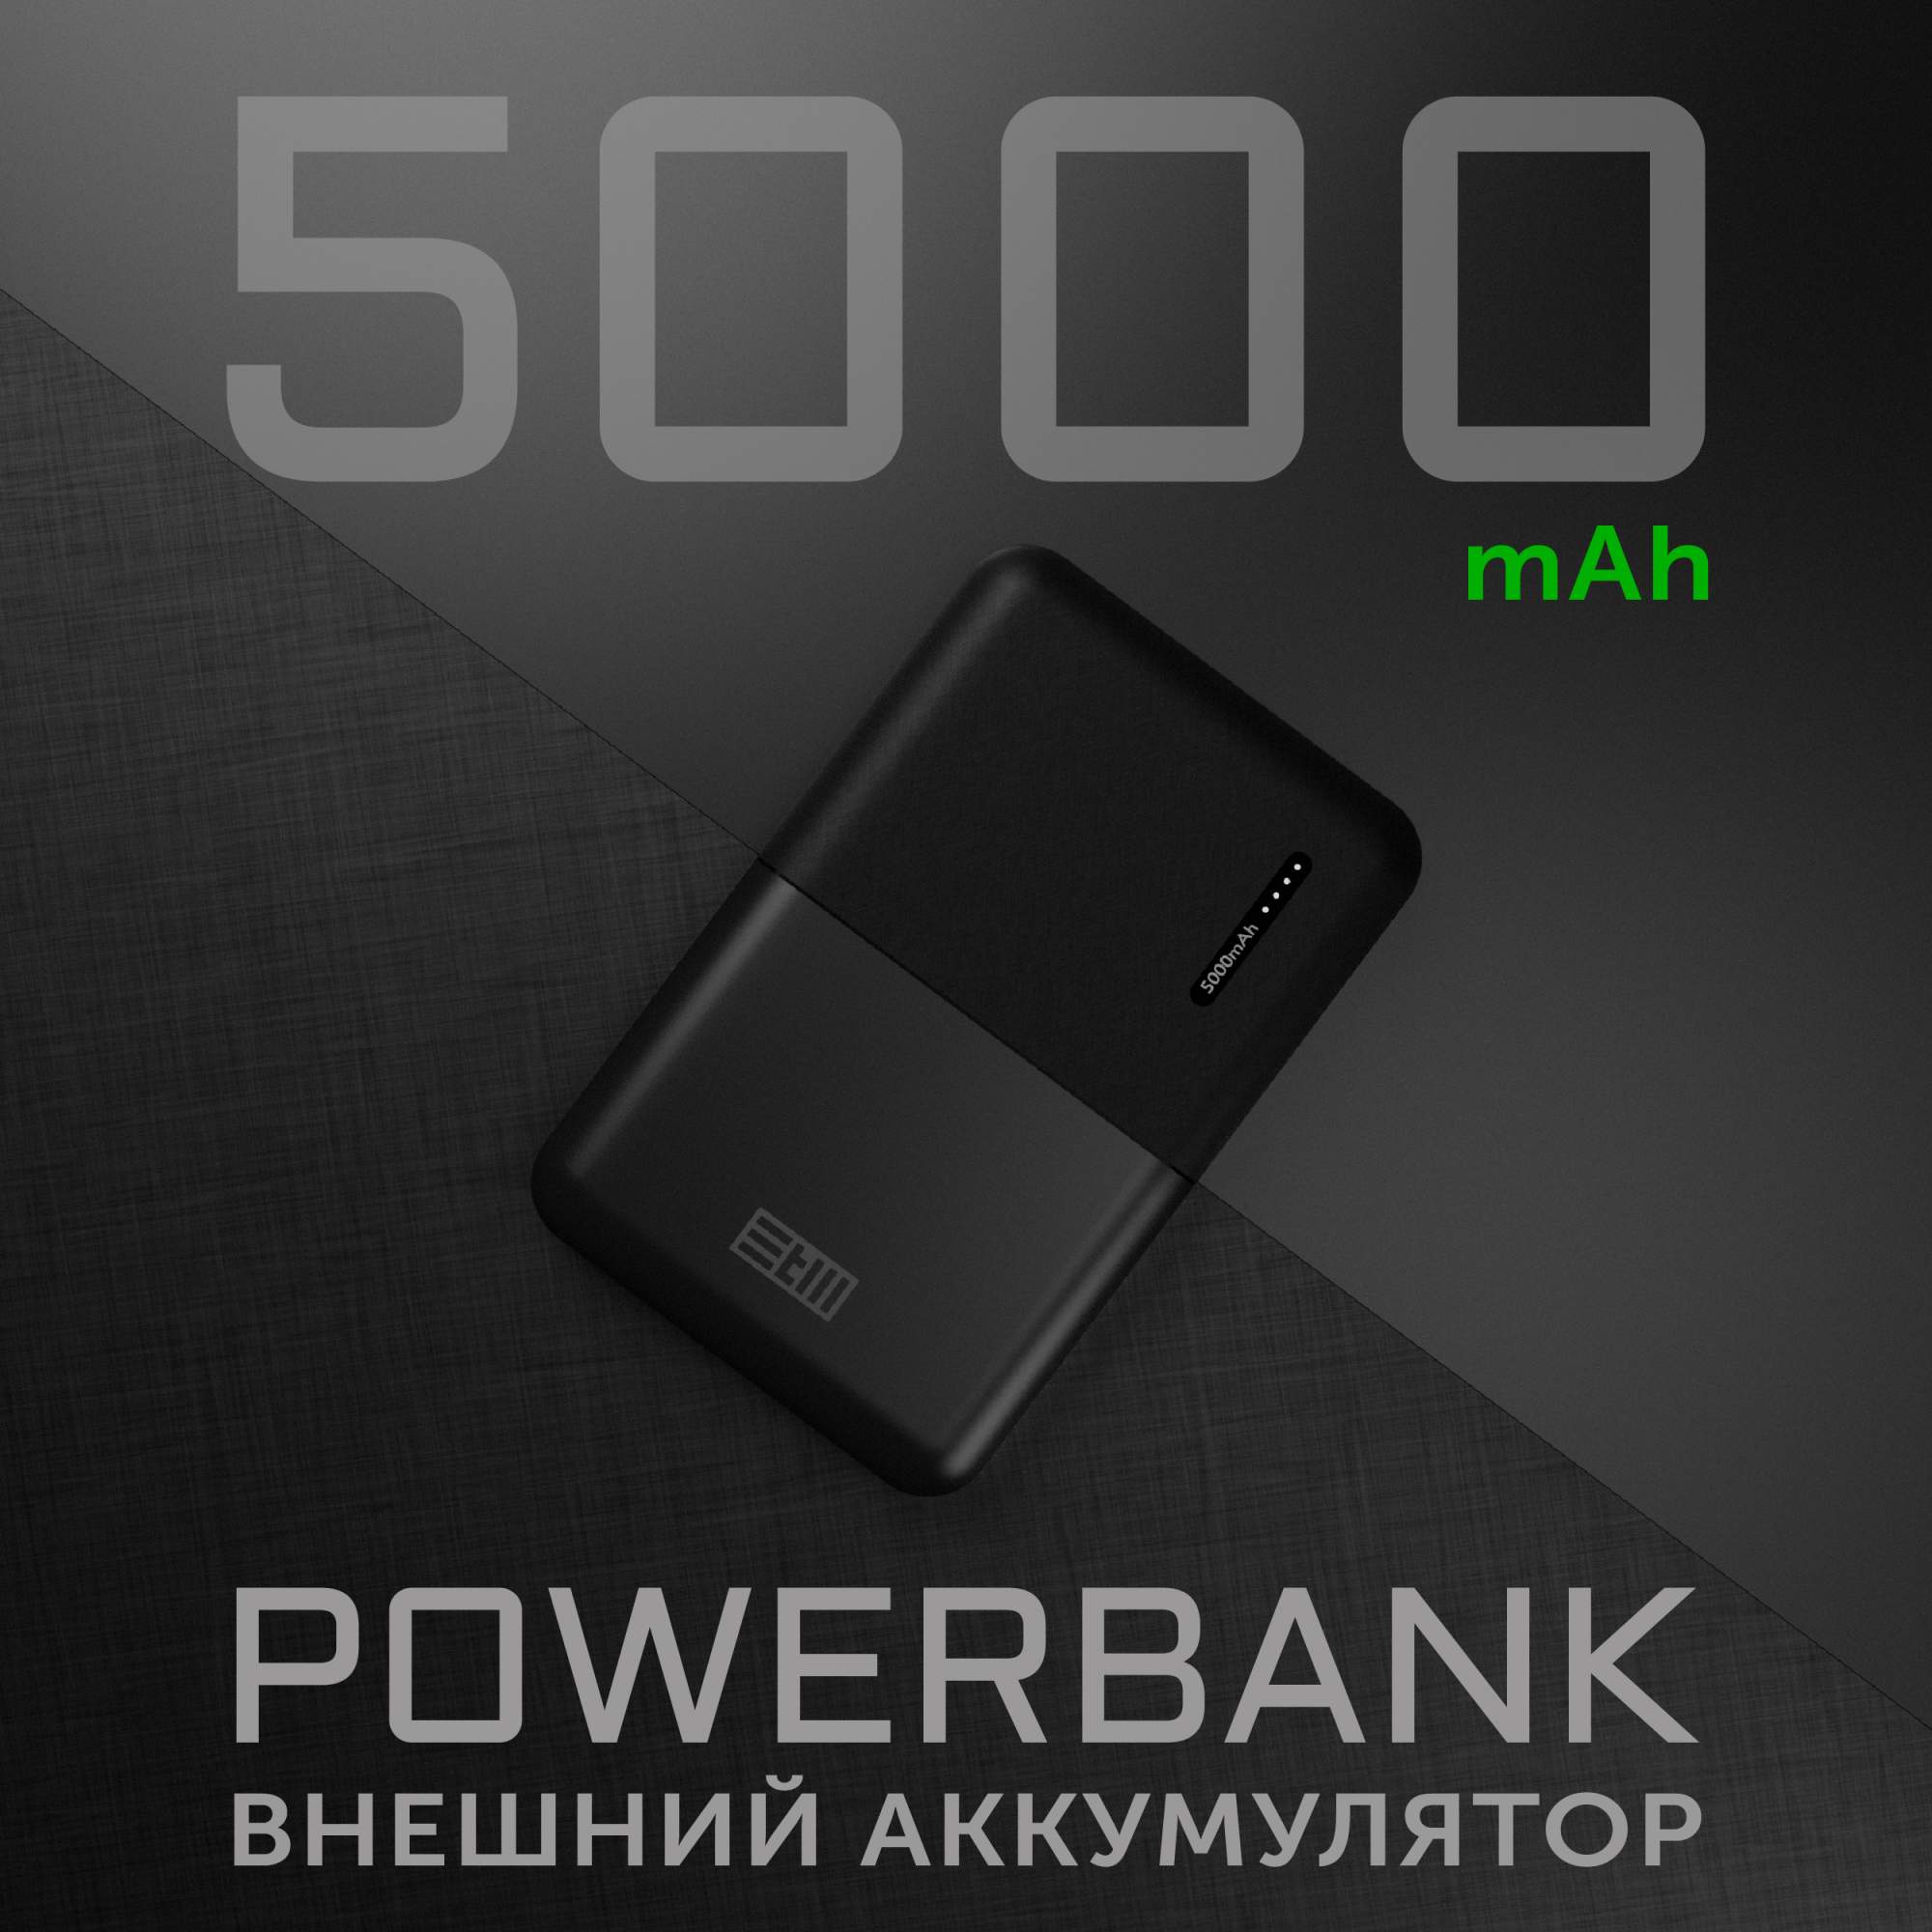 Внешний аккумулятор STM 5000 мА/ч для мобильных устройств, черный (STM-PB5MC) - купить в Москве, цены в интернет-магазинах Мегамаркет